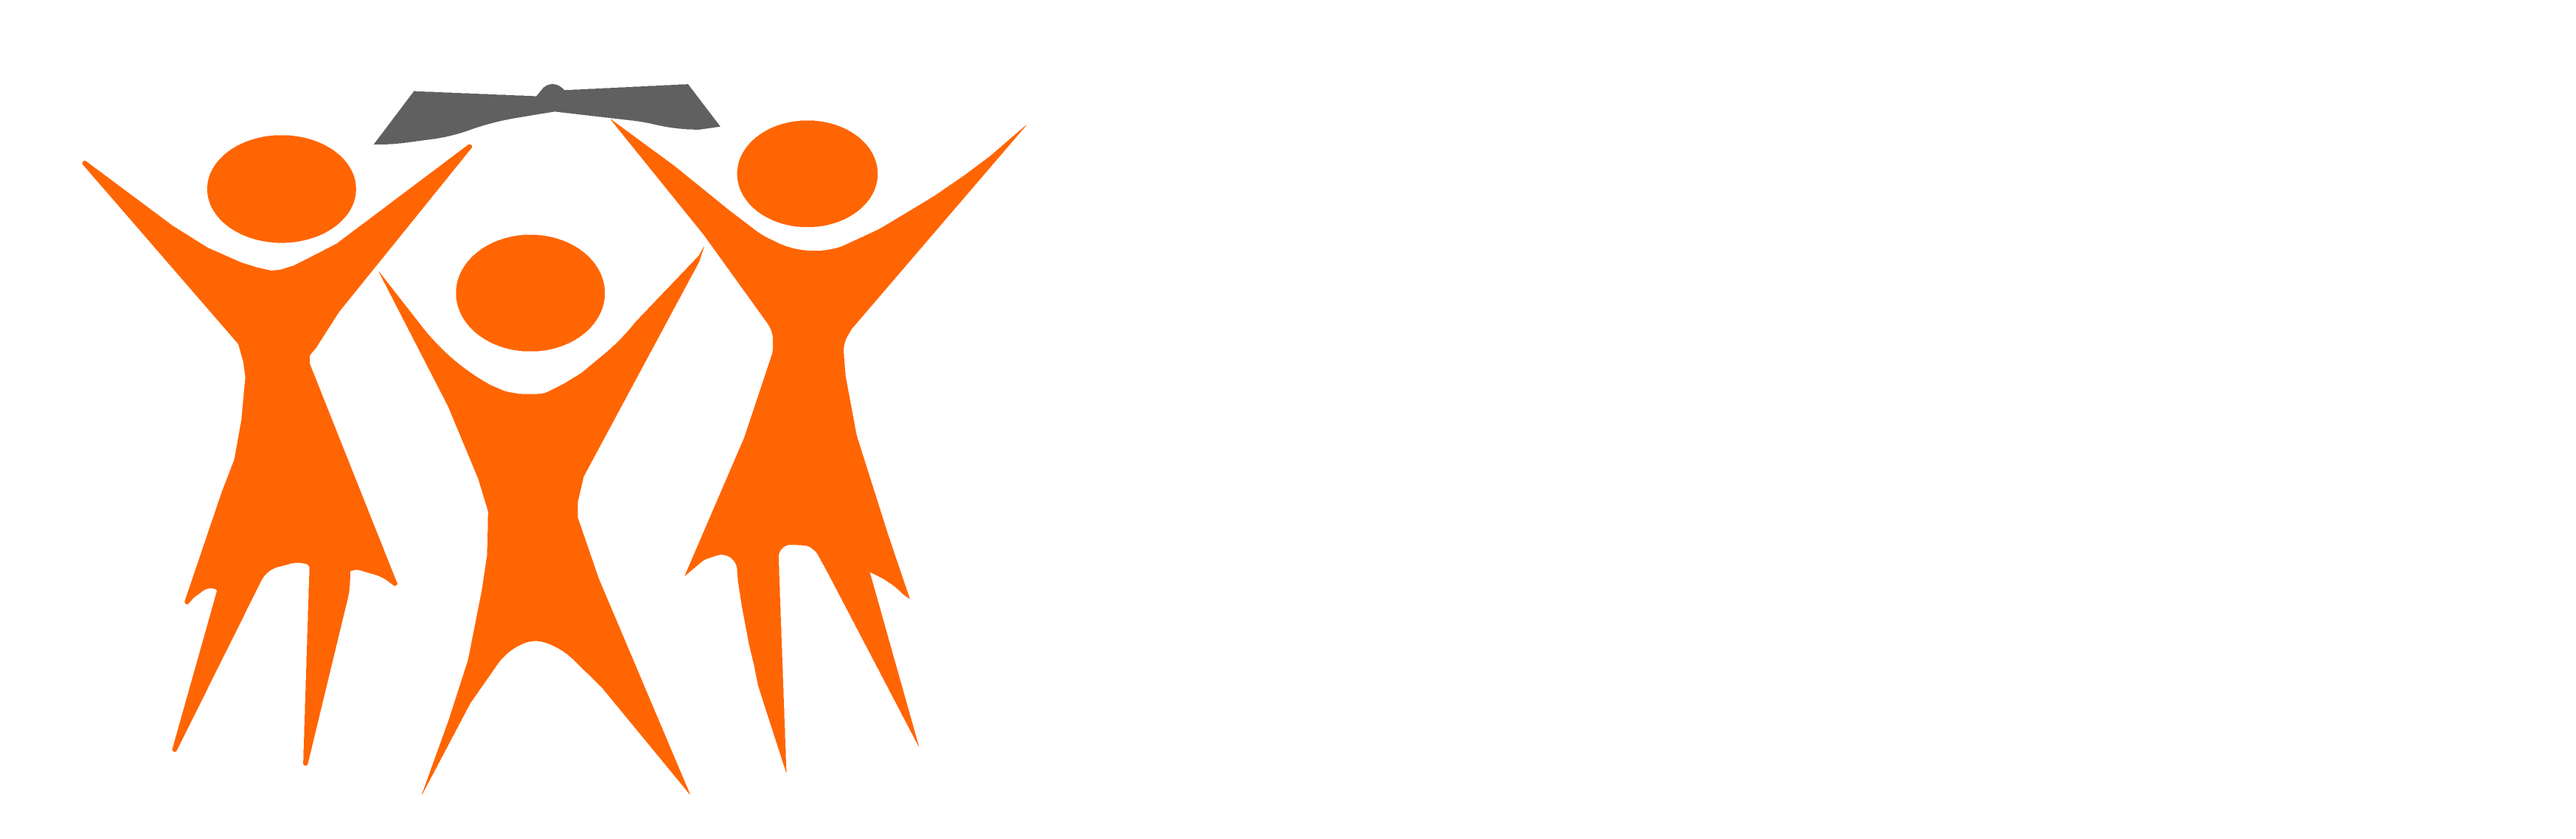 Tunaweza Empowerment